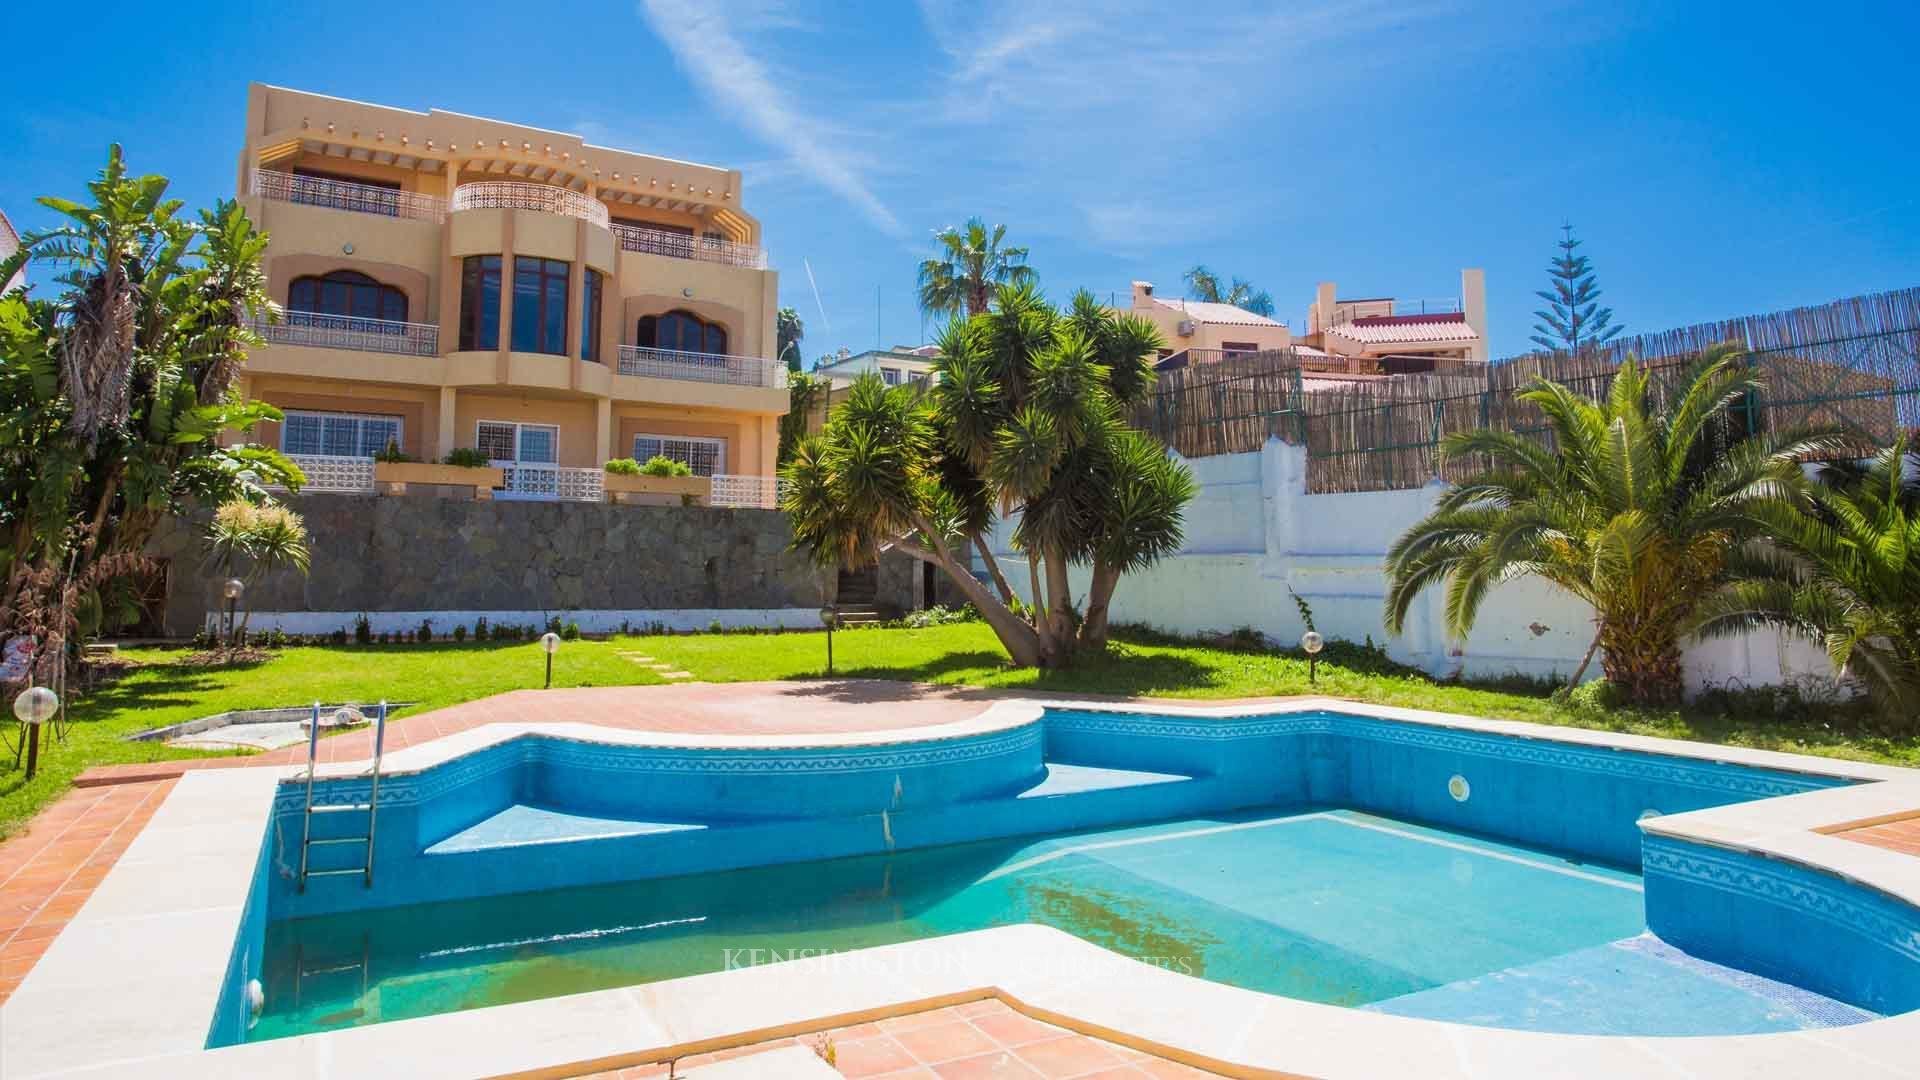 Villa Mouja in Tangier, Morocco